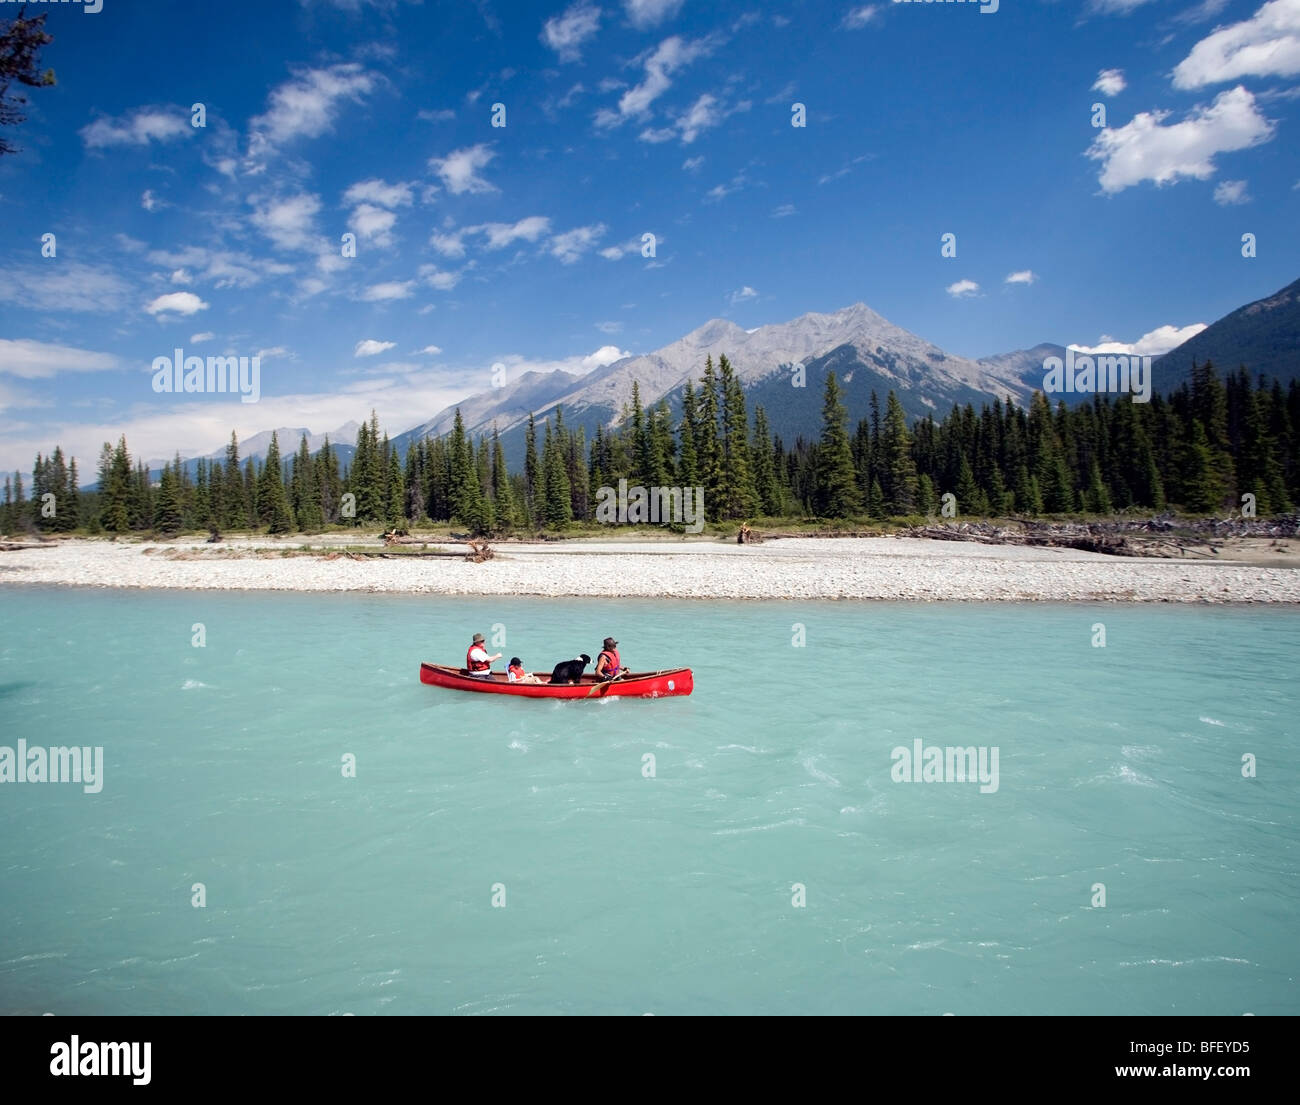 Canotage sur la rivière Kootney Kootney, Parc National, British Columbia, Canada, les gens, les montagnes, les enfants, le chien Banque D'Images